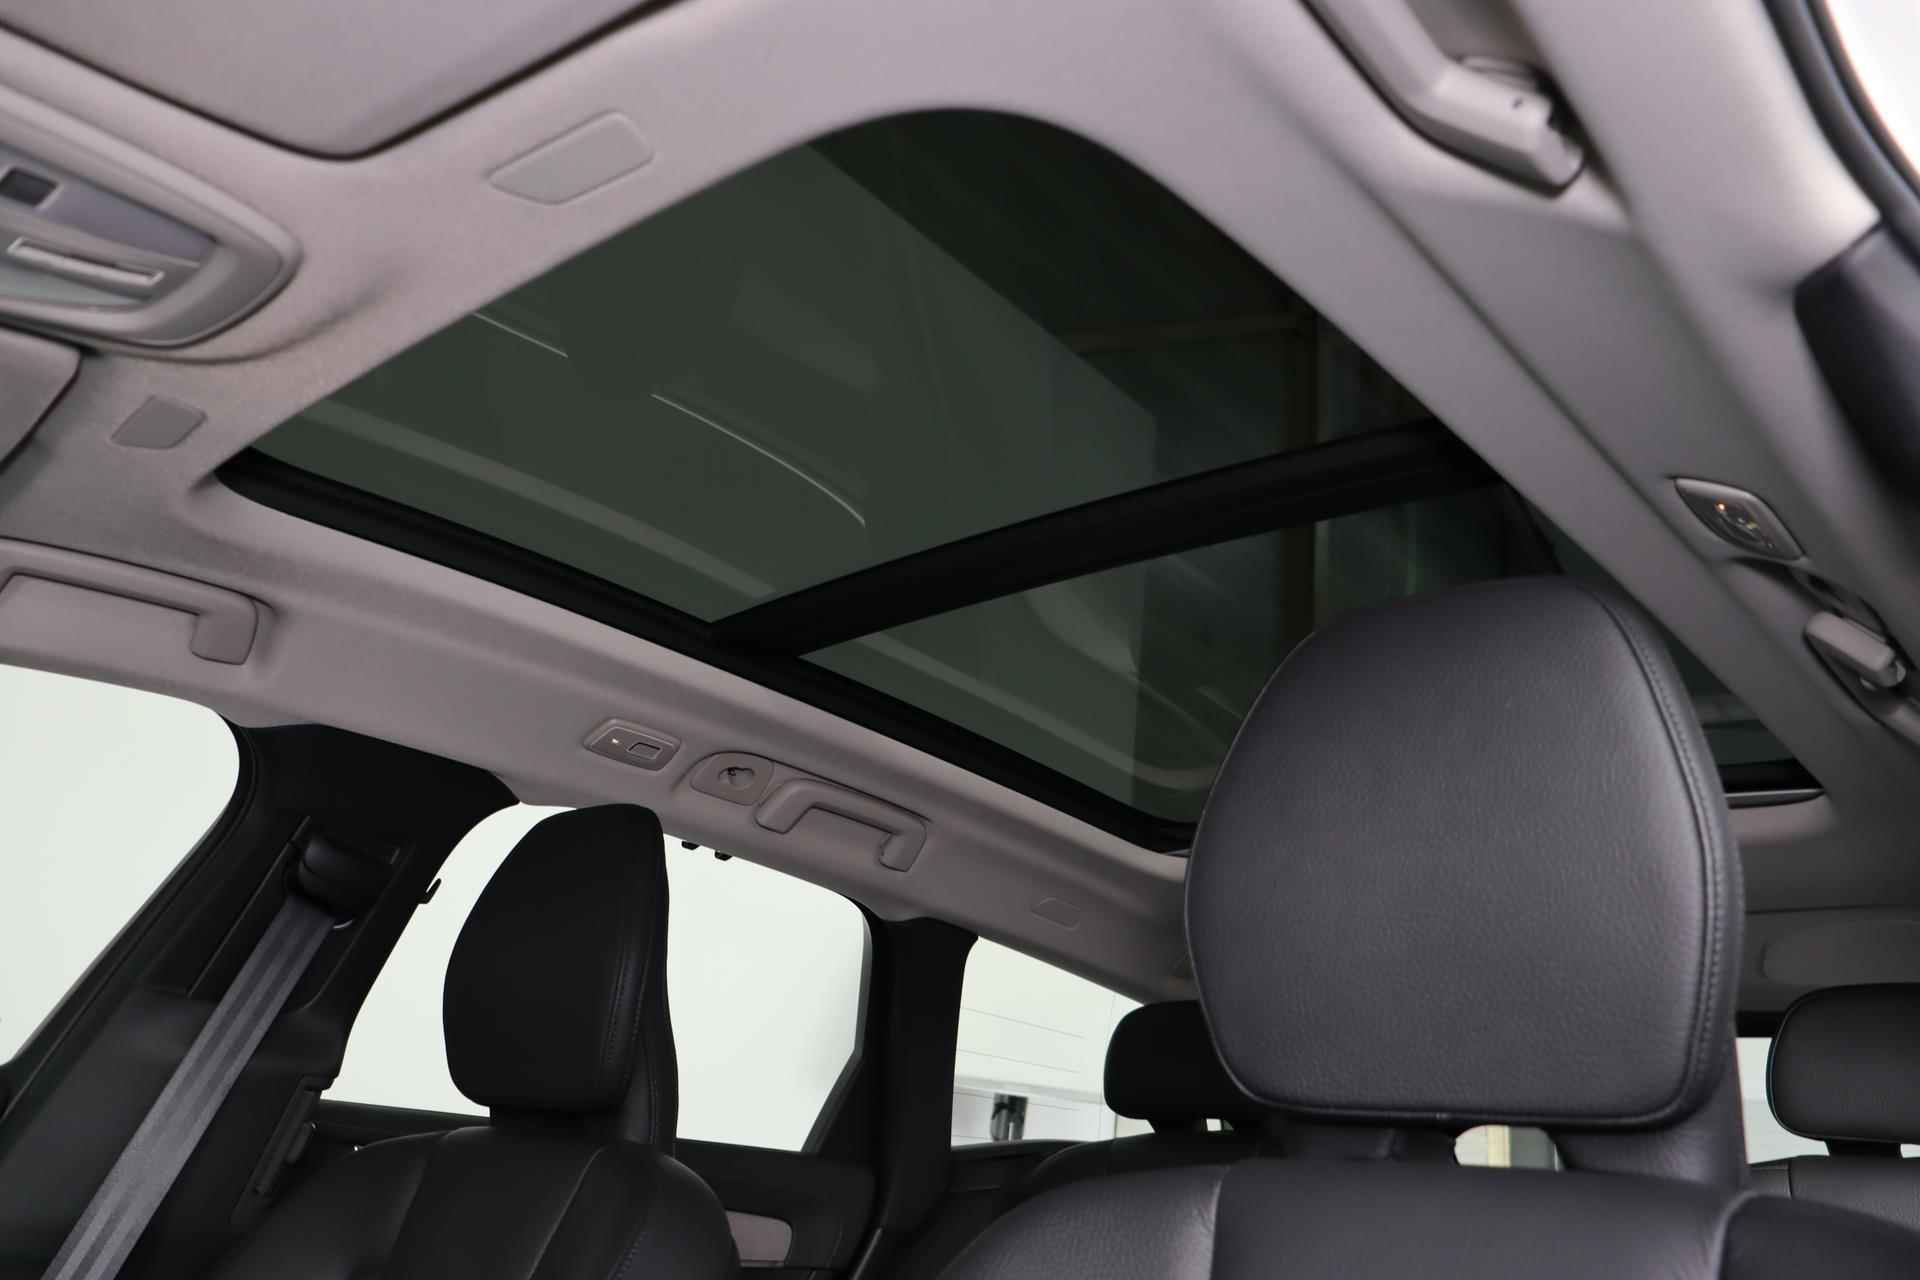 Volvo V90 T6 AWD Recharge Inscription - Panorama/schuifdak - IntelliSafe Assist & Surround - Harman/Kardon audio - Adaptieve LED koplampen - Parkeercamera achter - Verwarmde voorstoelen & stuur - Parkeersensoren voor & achter - Elektr. bedienb. voorstoelen met geheugen - Standkachel - 19' LMV - 6/33